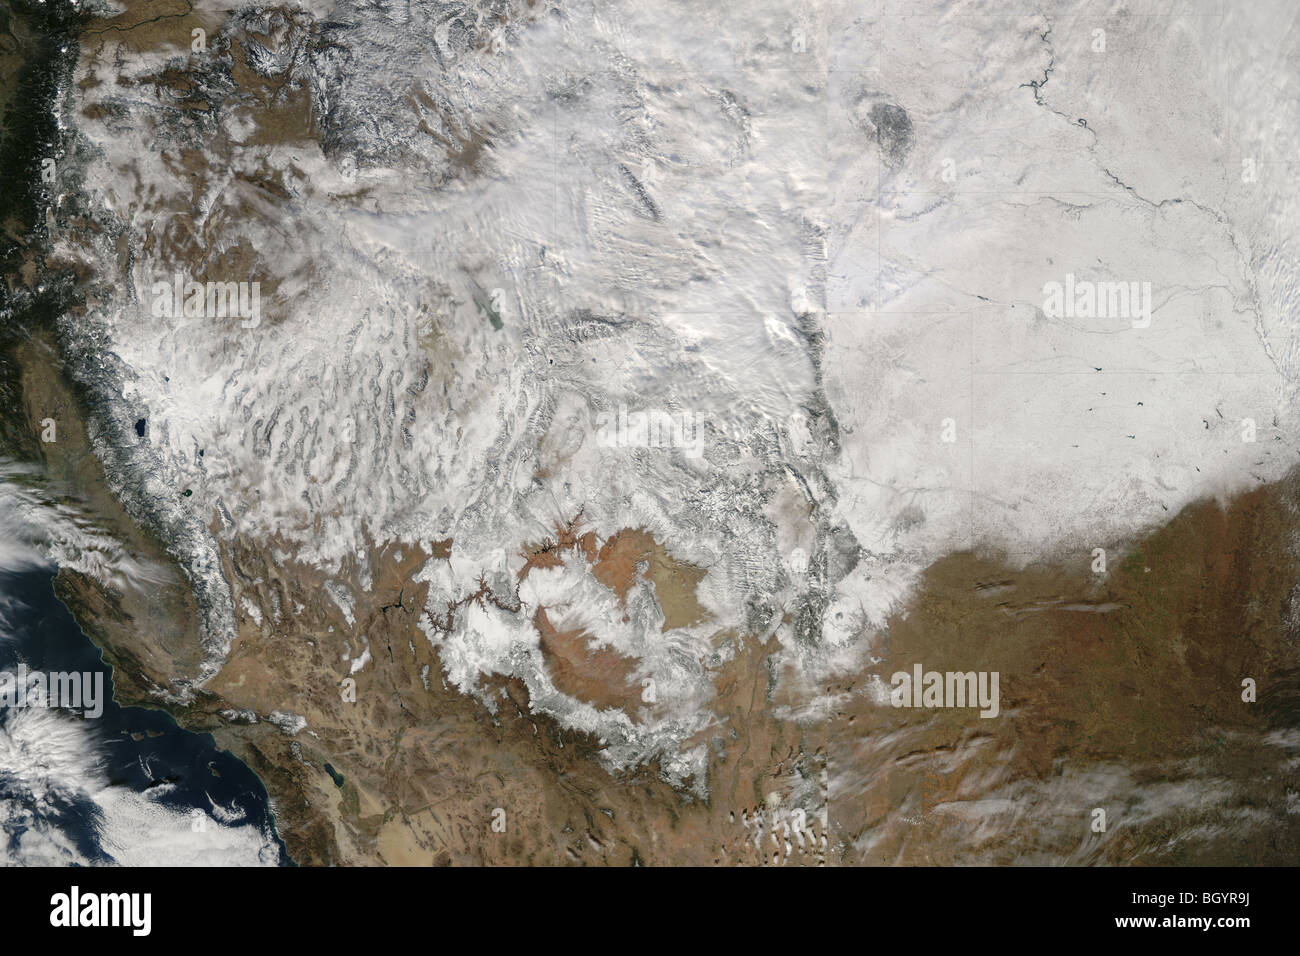 La nieve, en el oeste de los Estados Unidos, los satélites Terra y Aqua. NASA crédito Foto de stock